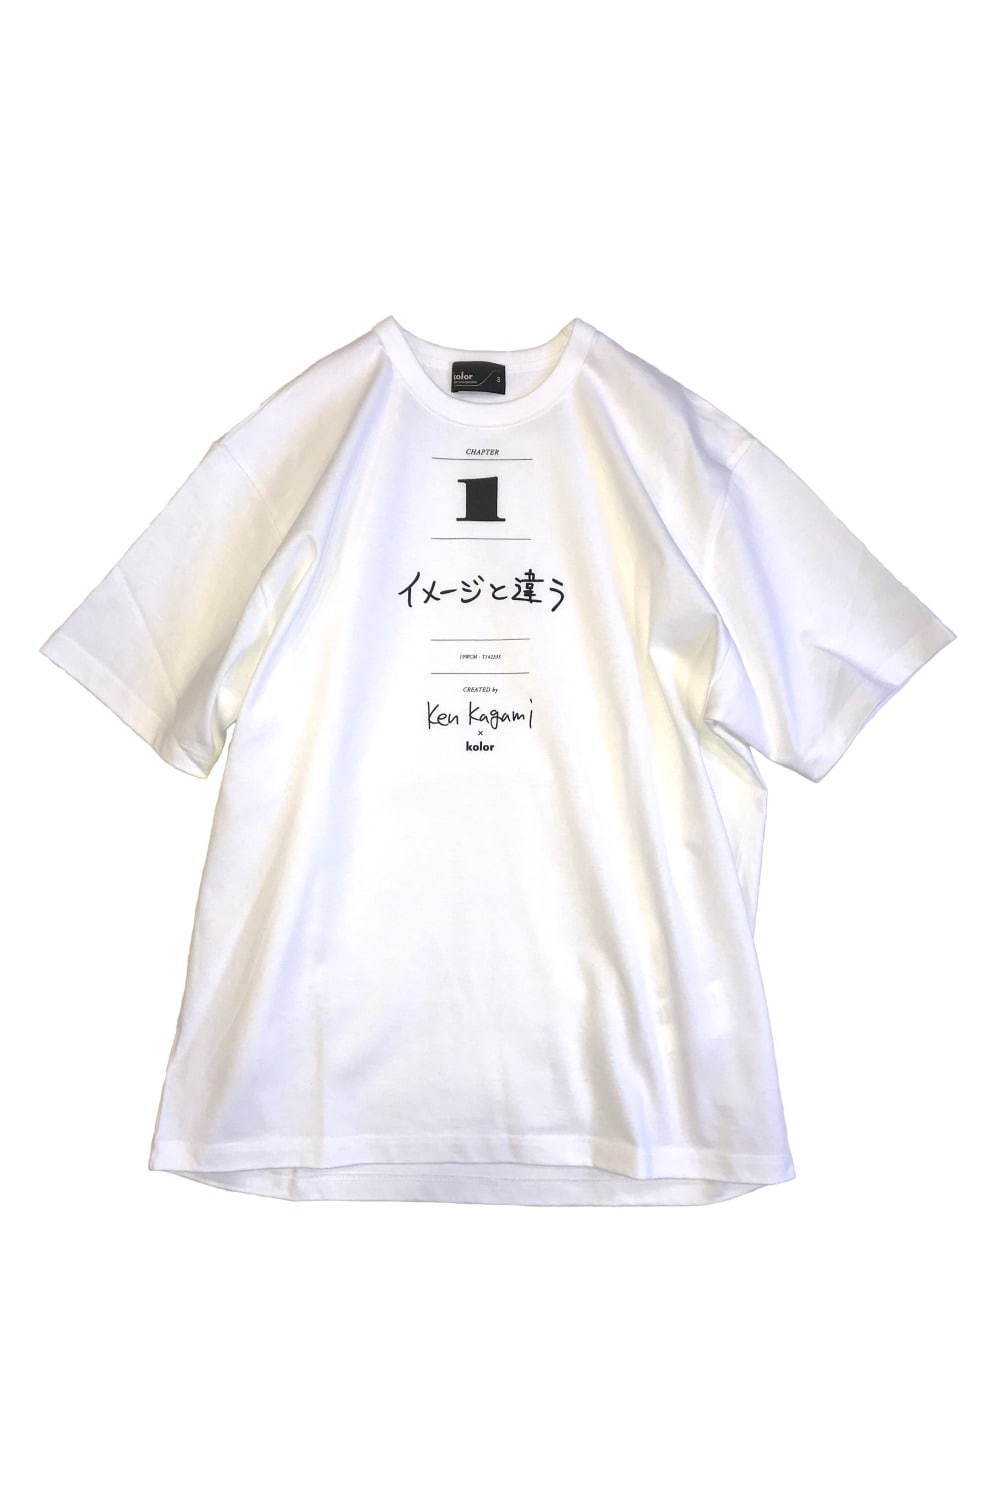 カラー×現代美術作家 加賀美健のコラボTシャツ、ファッション関連の3つのメッセージ入り｜写真1